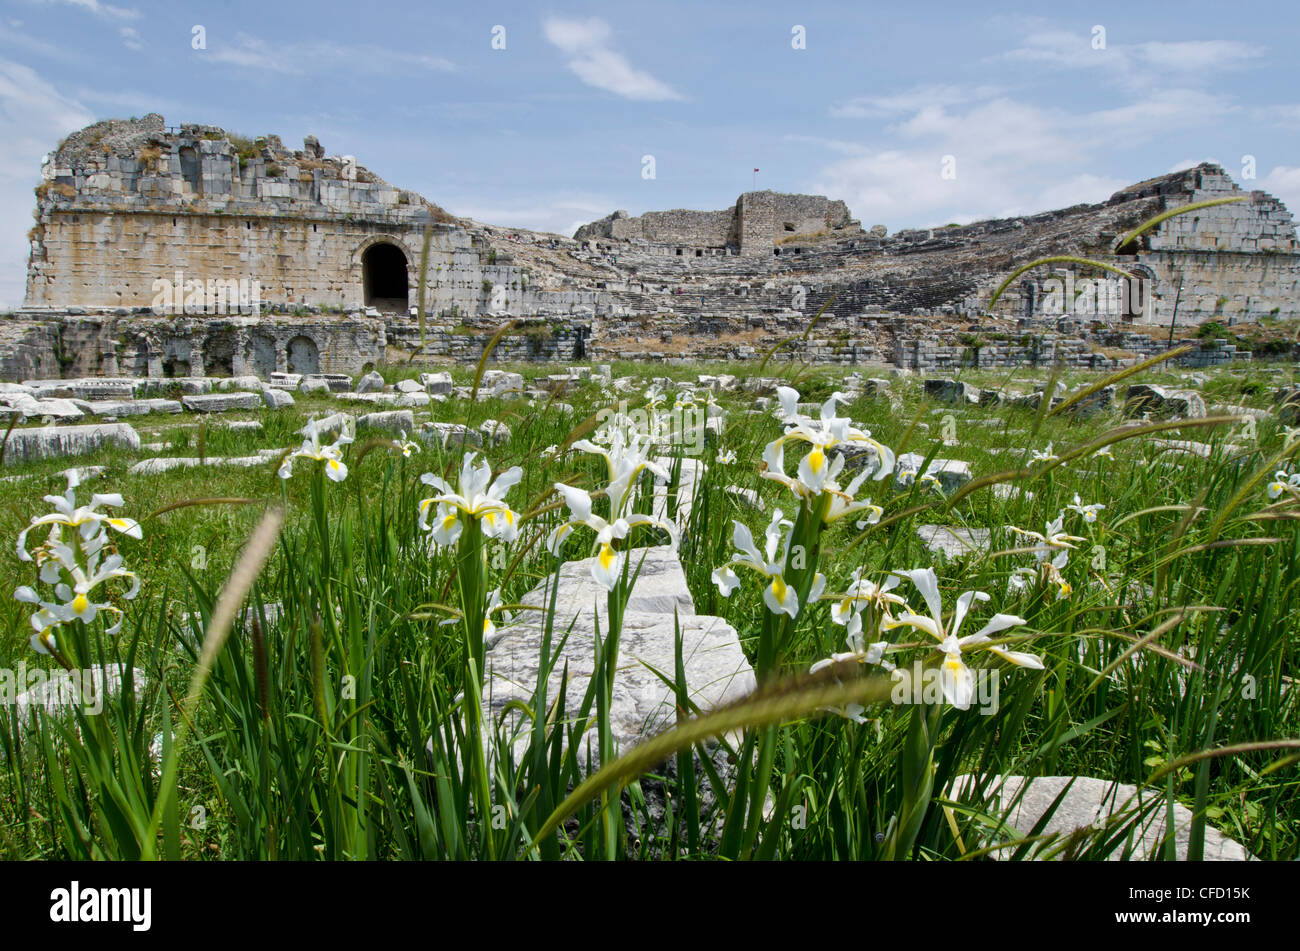 Amphitheater in Milet, eine antike griechische Stadt an der Westküste von Anatolien, Türkei. Stockfoto